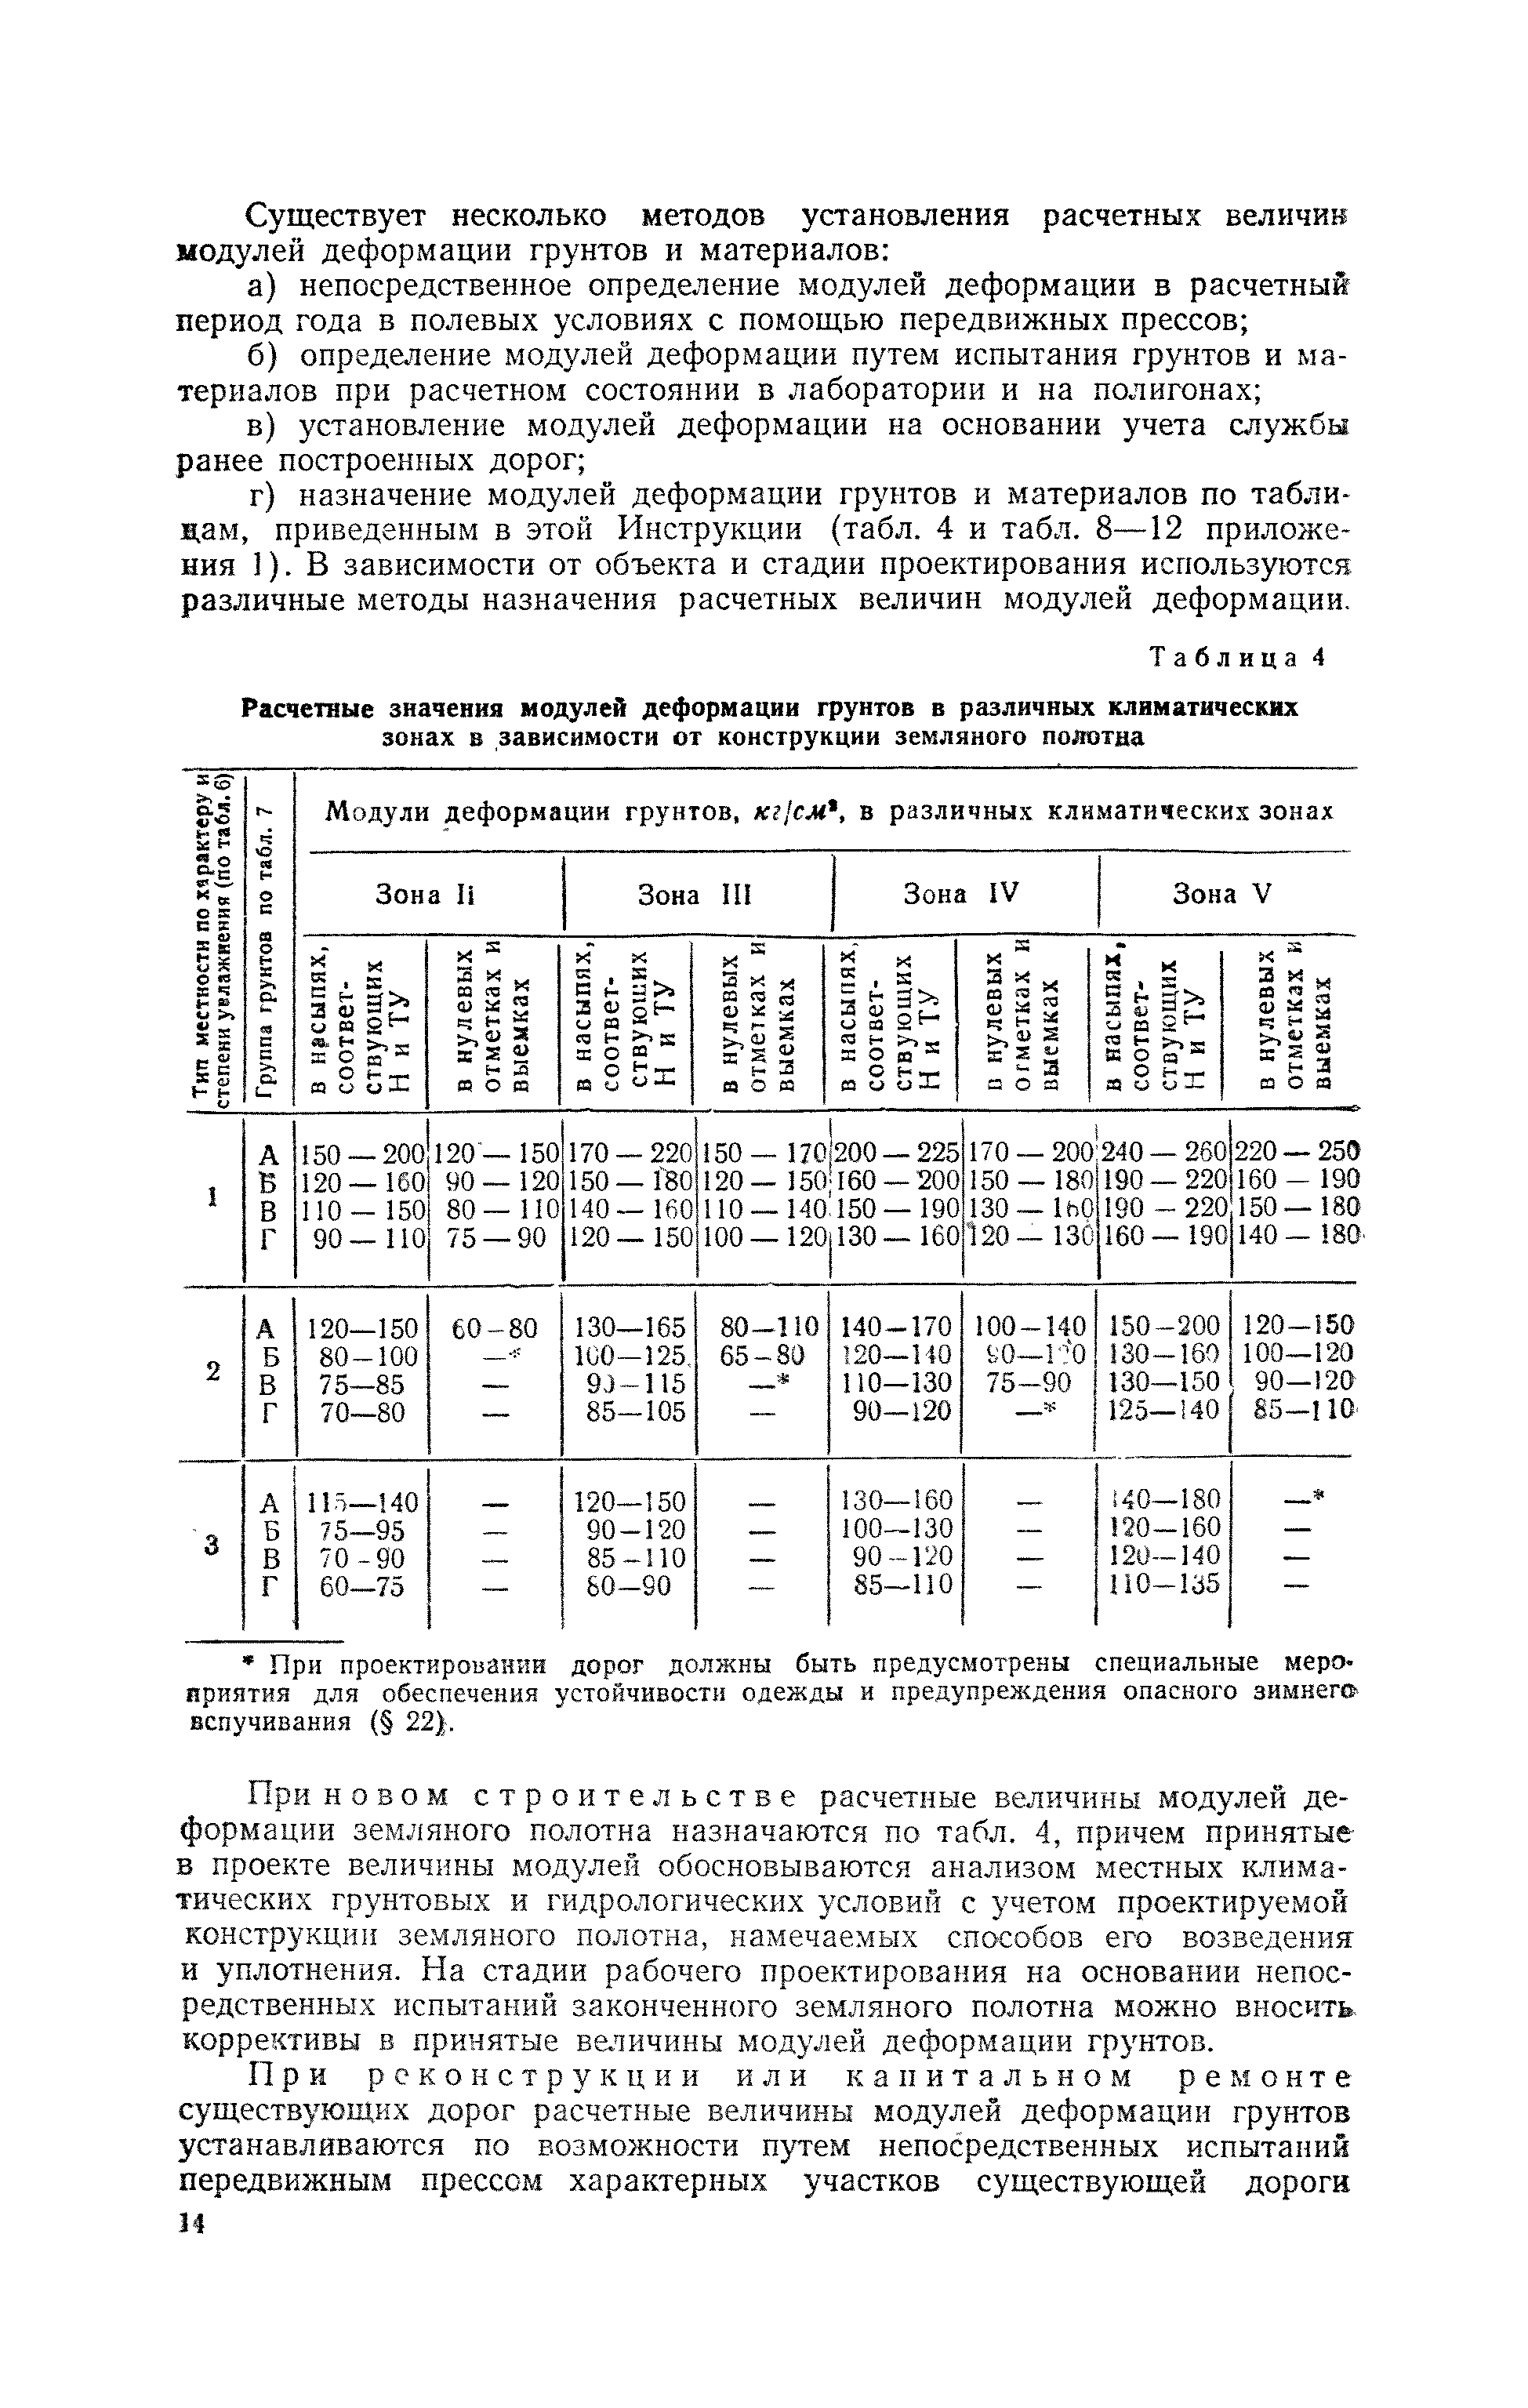 ВИ 103-57/Главдорстрой СССР